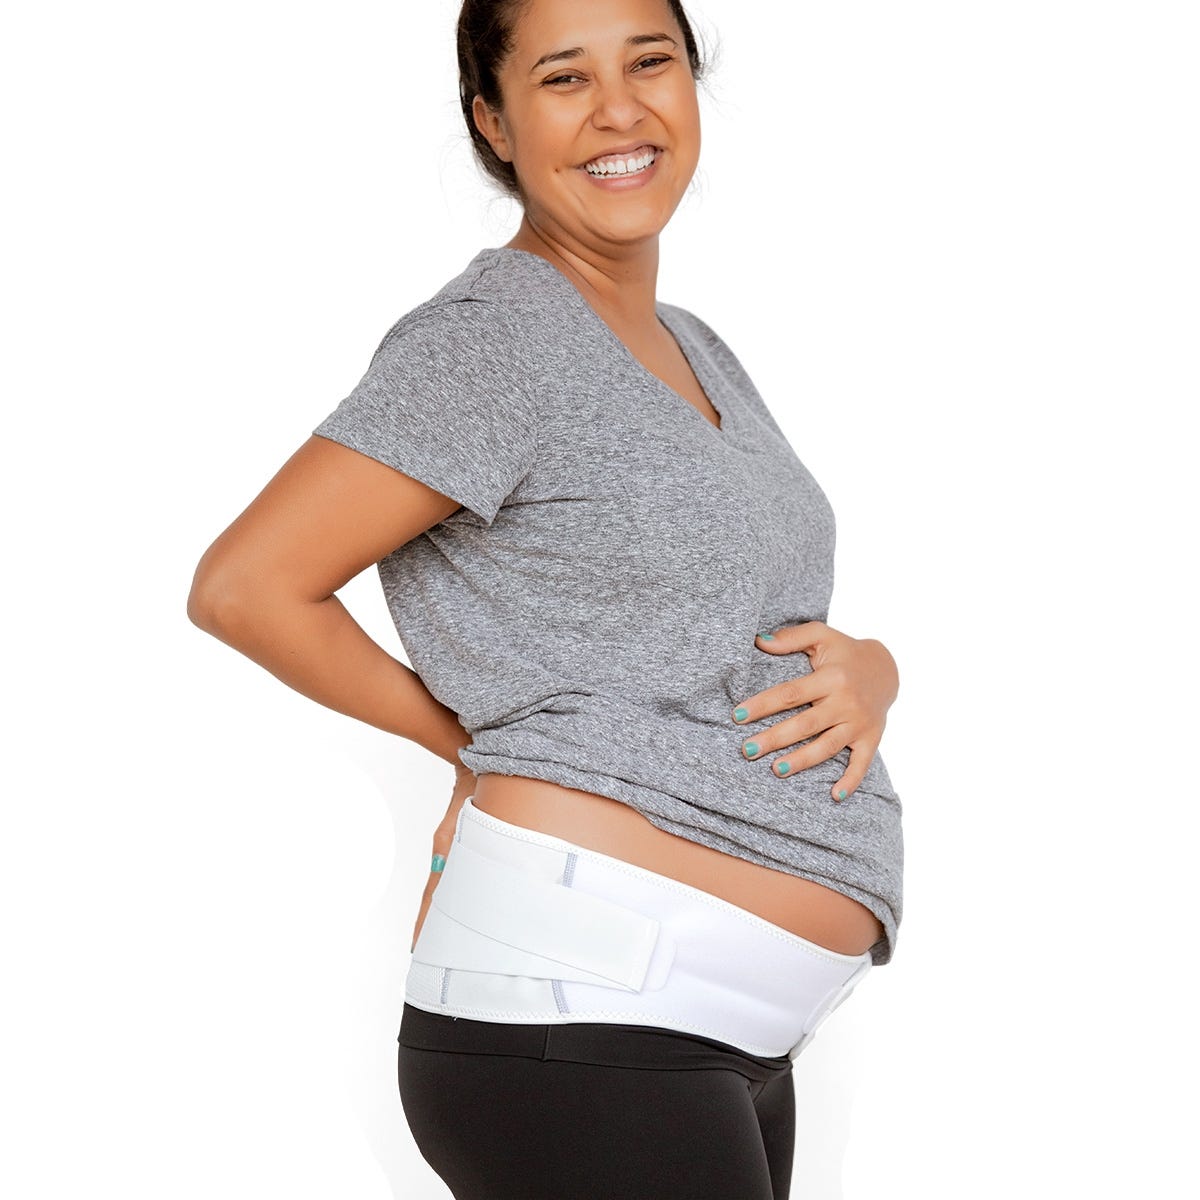 Pregnancy Maternity Support Belt Bump Postpartum Waist Back Lumbar Belly Band 